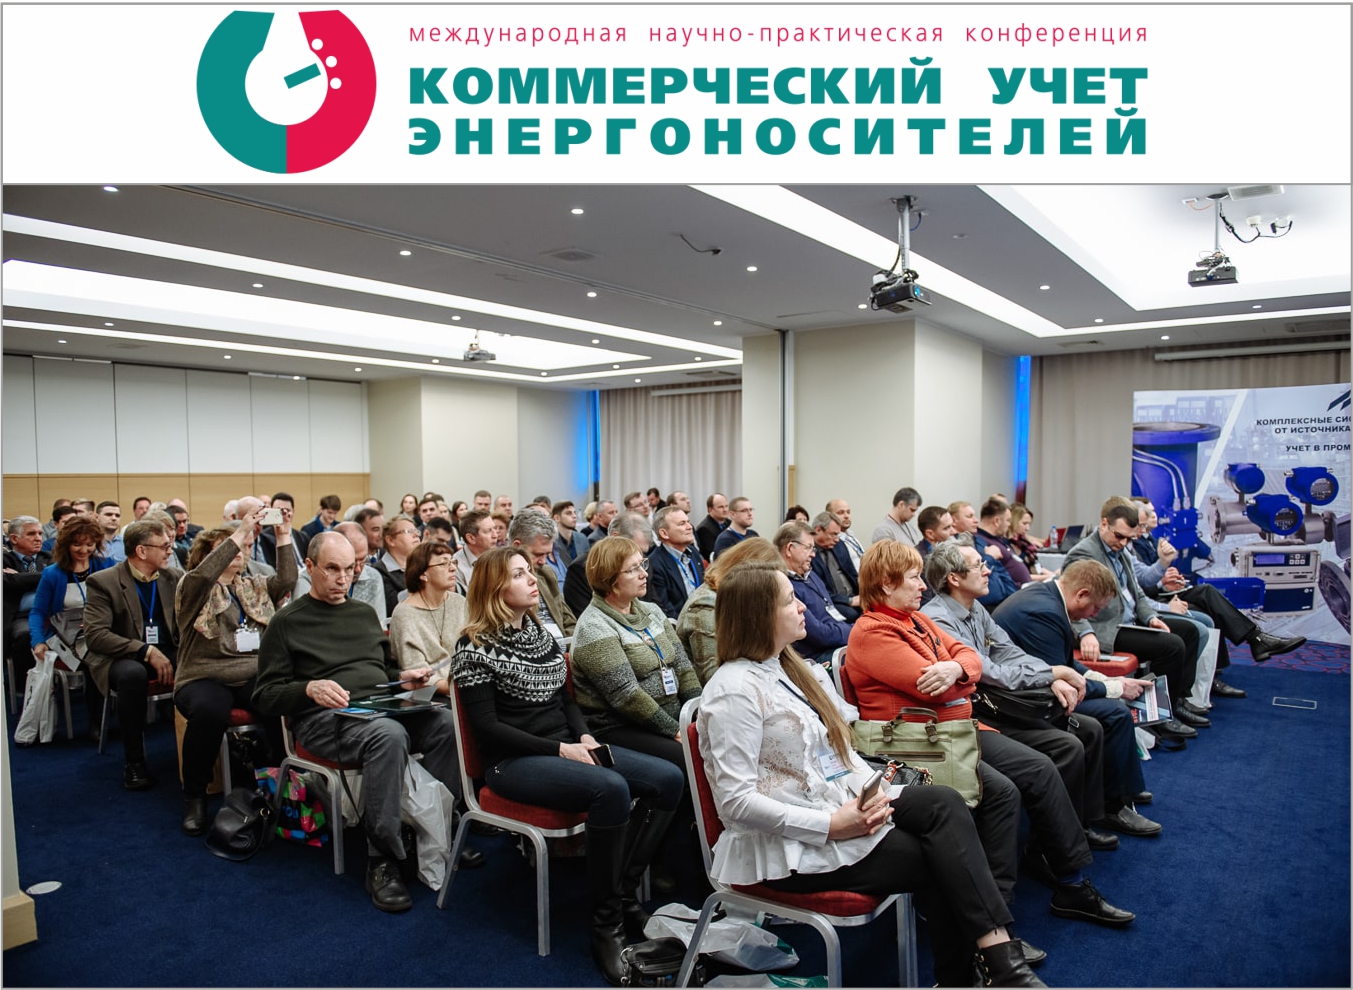 Конференция «Коммерческий учет энергоносителей», Санкт-Петербург, 23 апреля 2020